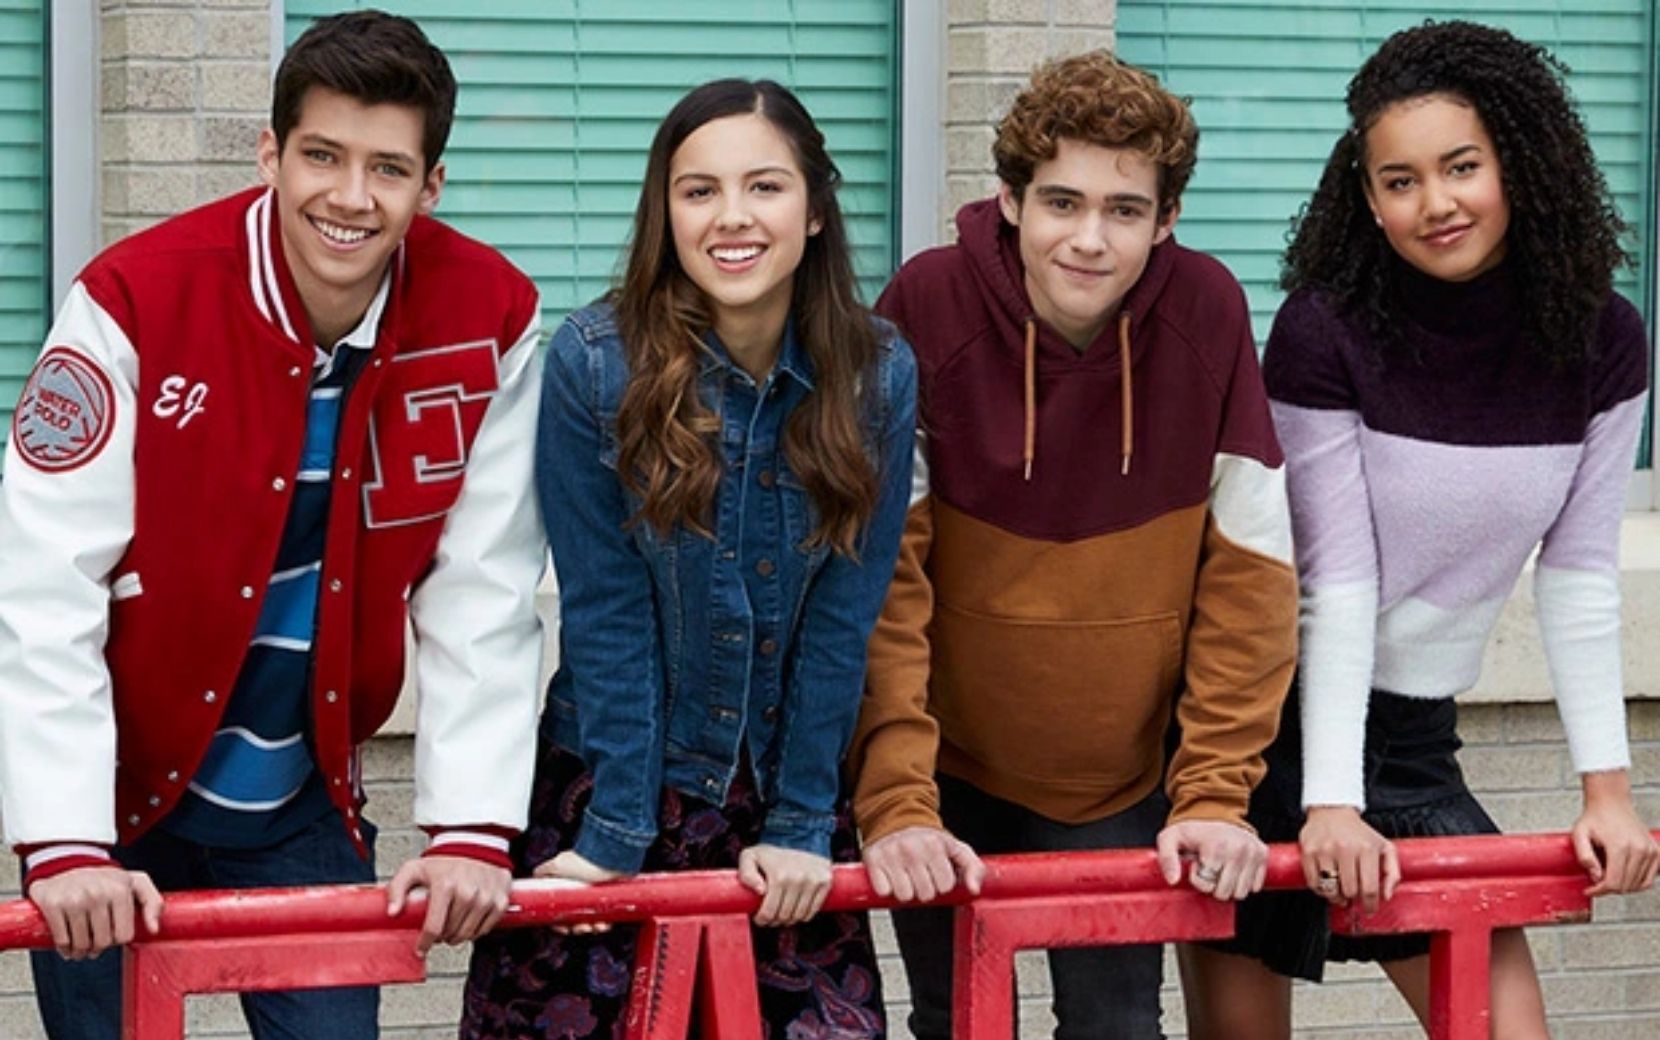 Segunda temporada da série de "High School Musical" tem data de estreia revelada!